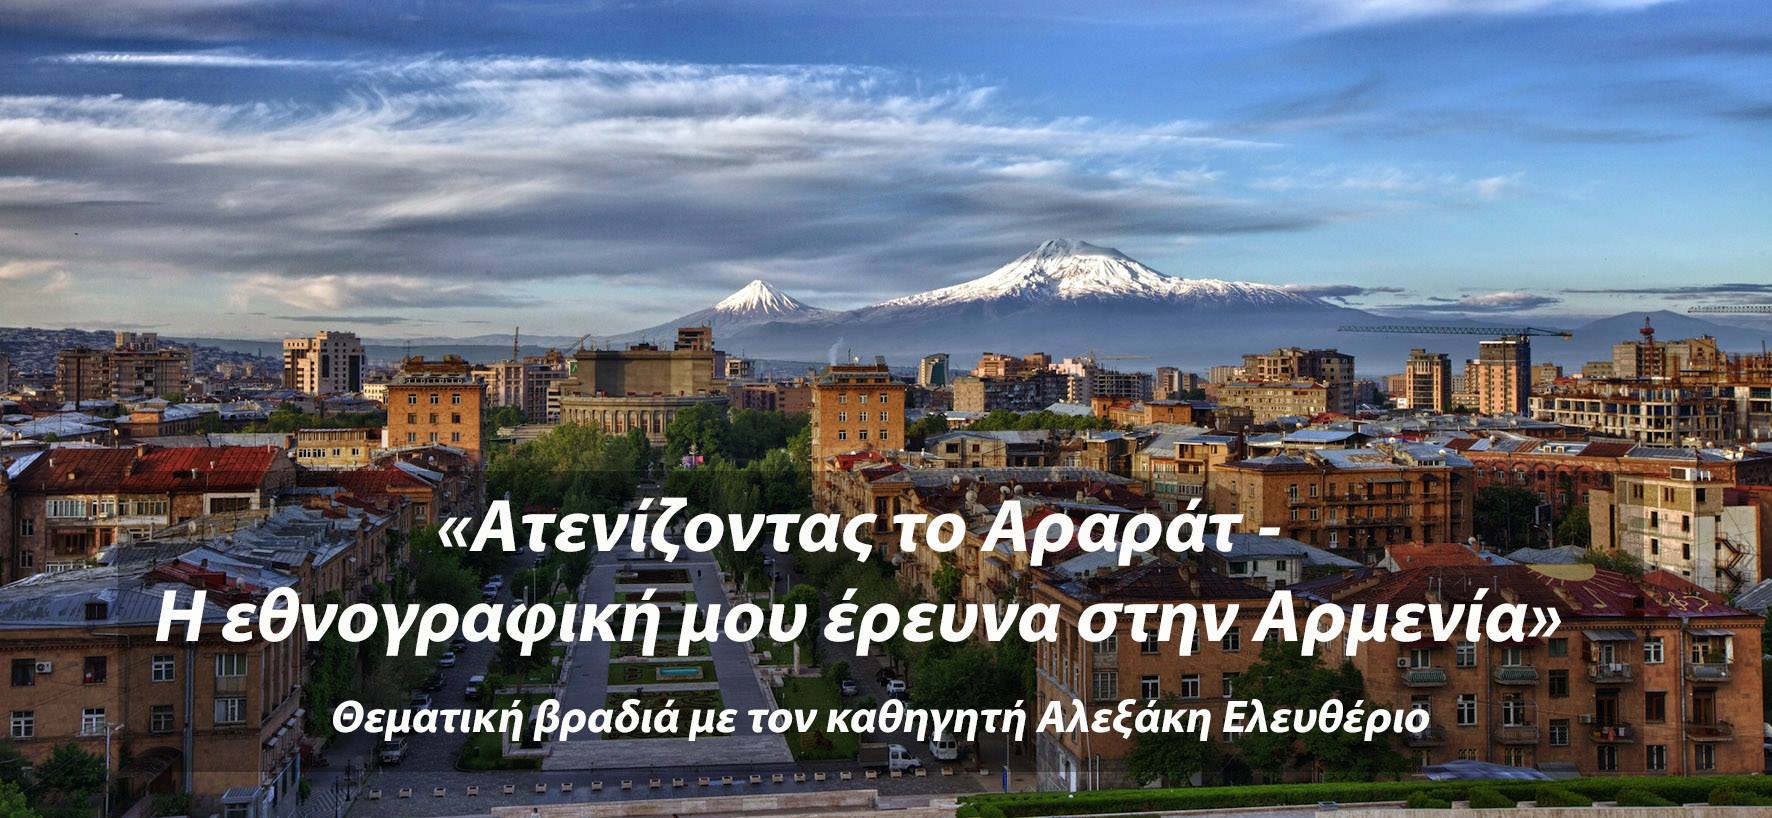 alexakis periodiko armenika